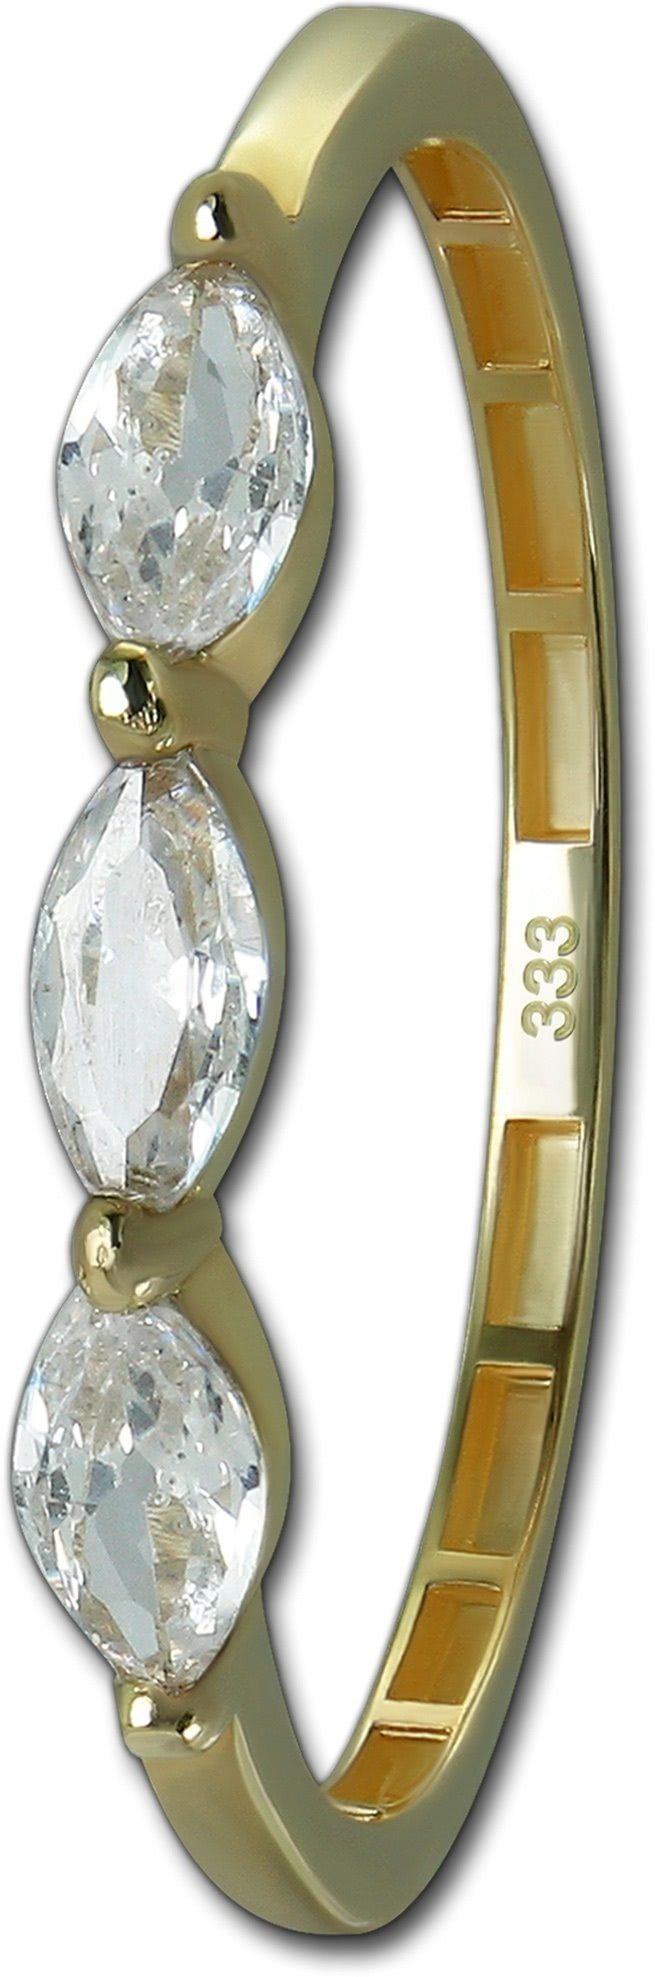 GoldDream Goldring GoldDream Gold Ring Shine Gr.56 (Fingerring), Damen Ring Echtgold, 333er Gelbgold gold, weiß Shine